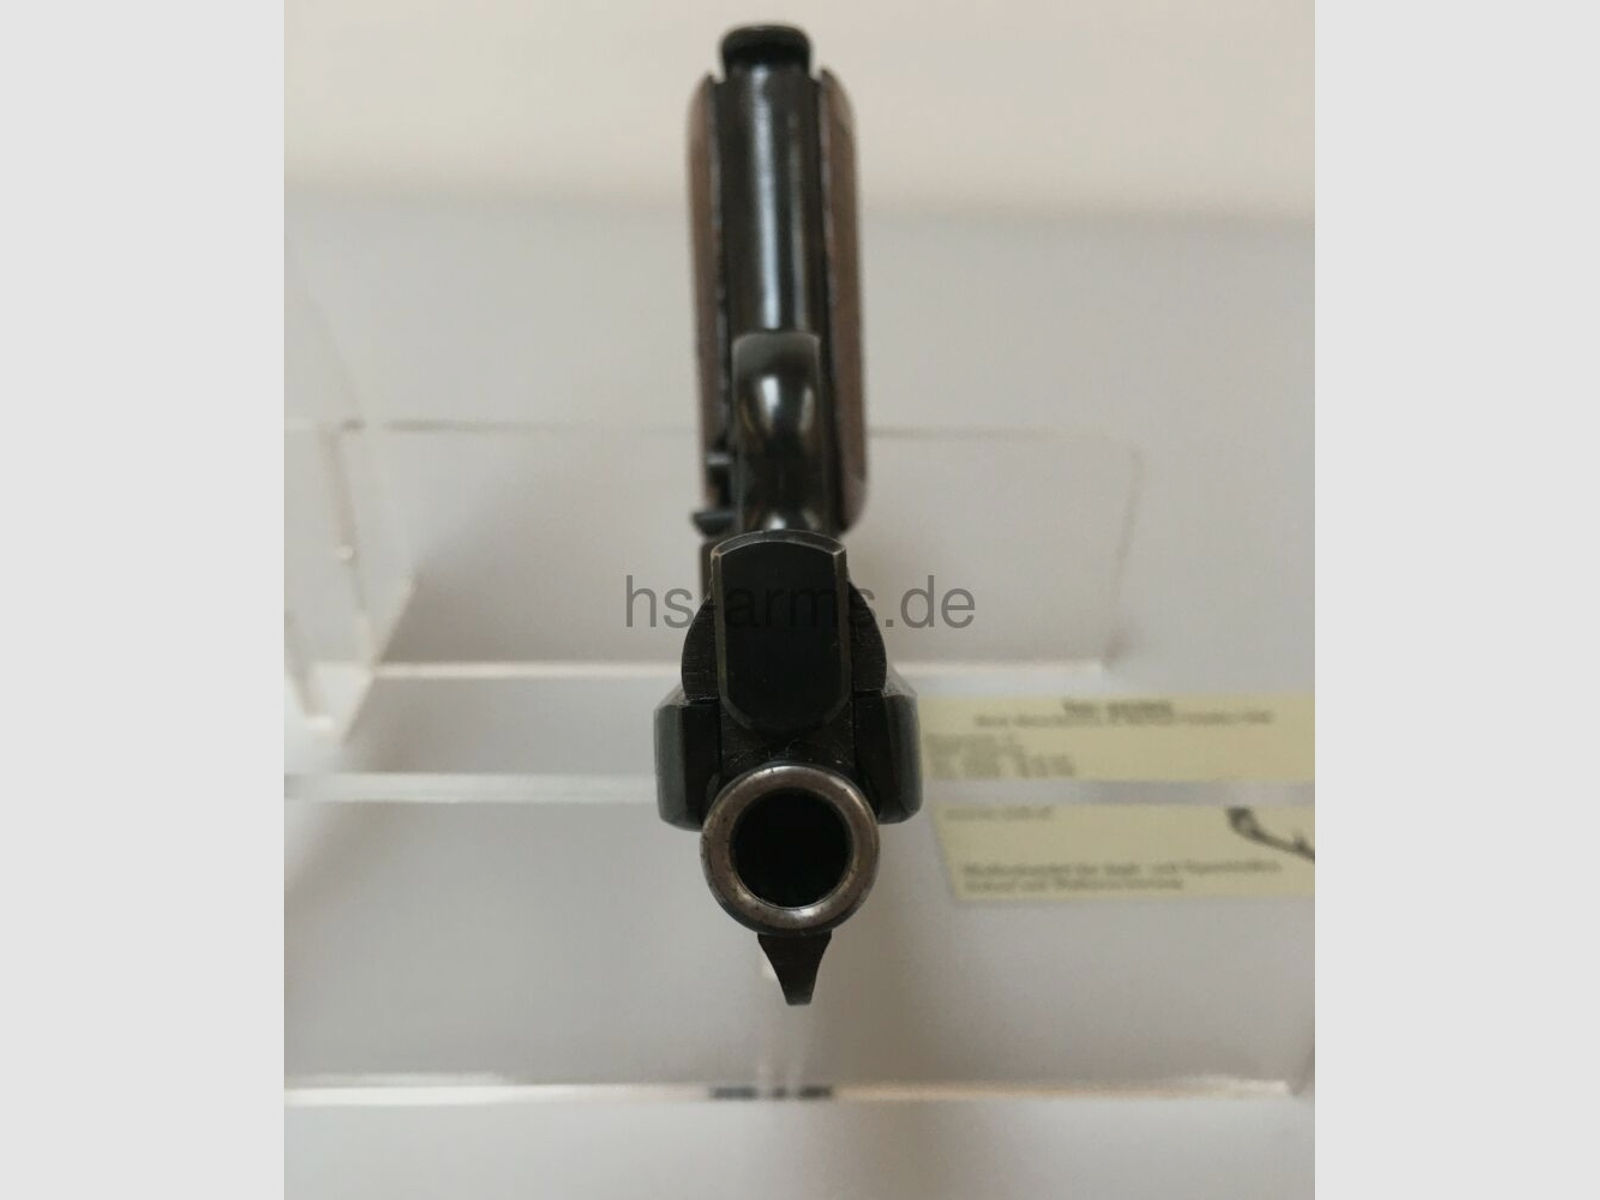 Mauser	 Taschenpistole Mauser 34 - 7,65 mm